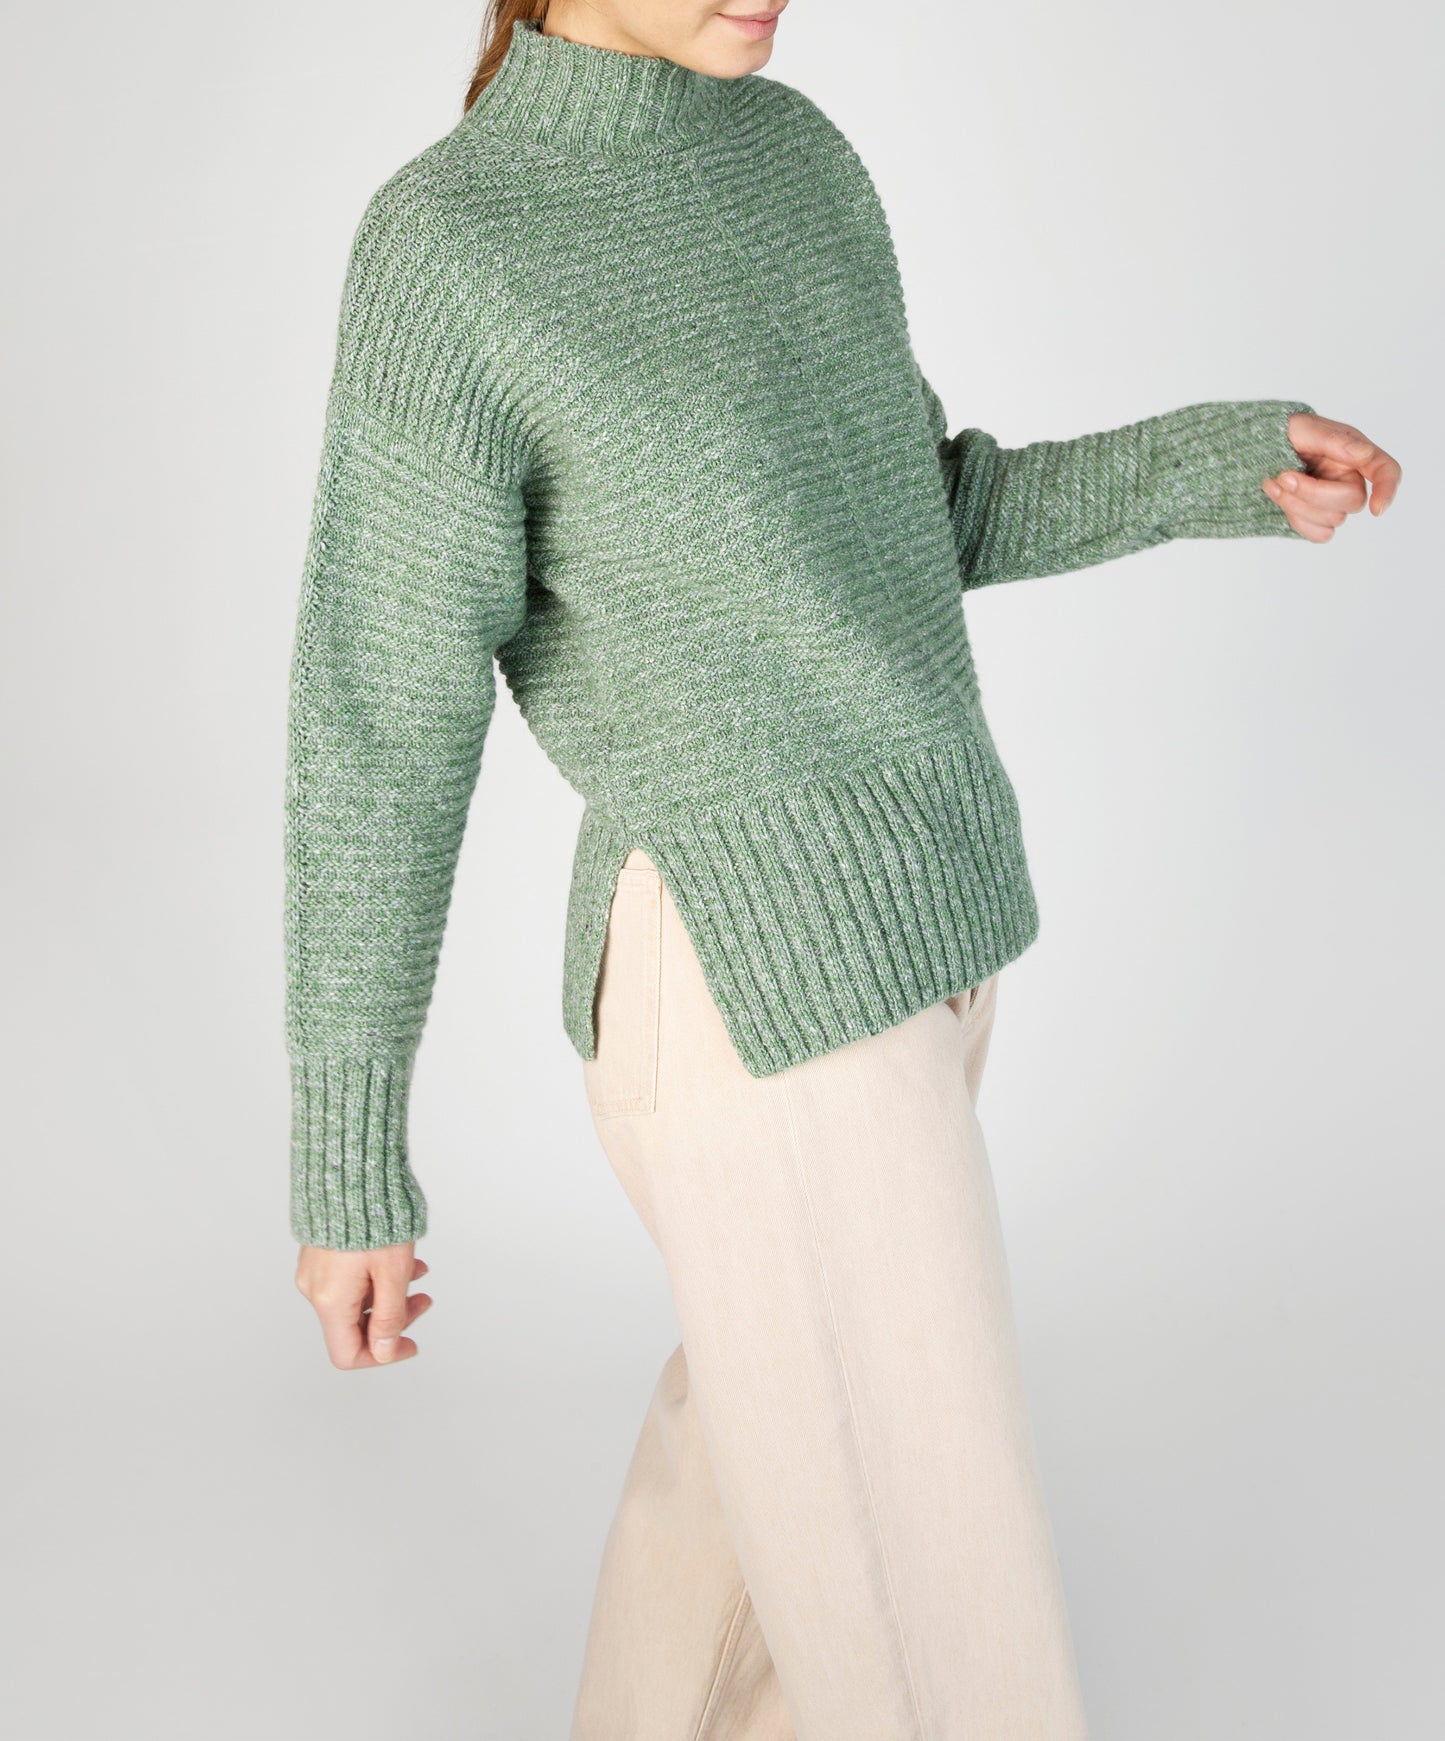 IrelandsEye Knitwear ‘Iris’ Contrast Panel Funnel Neck Sweater Apple